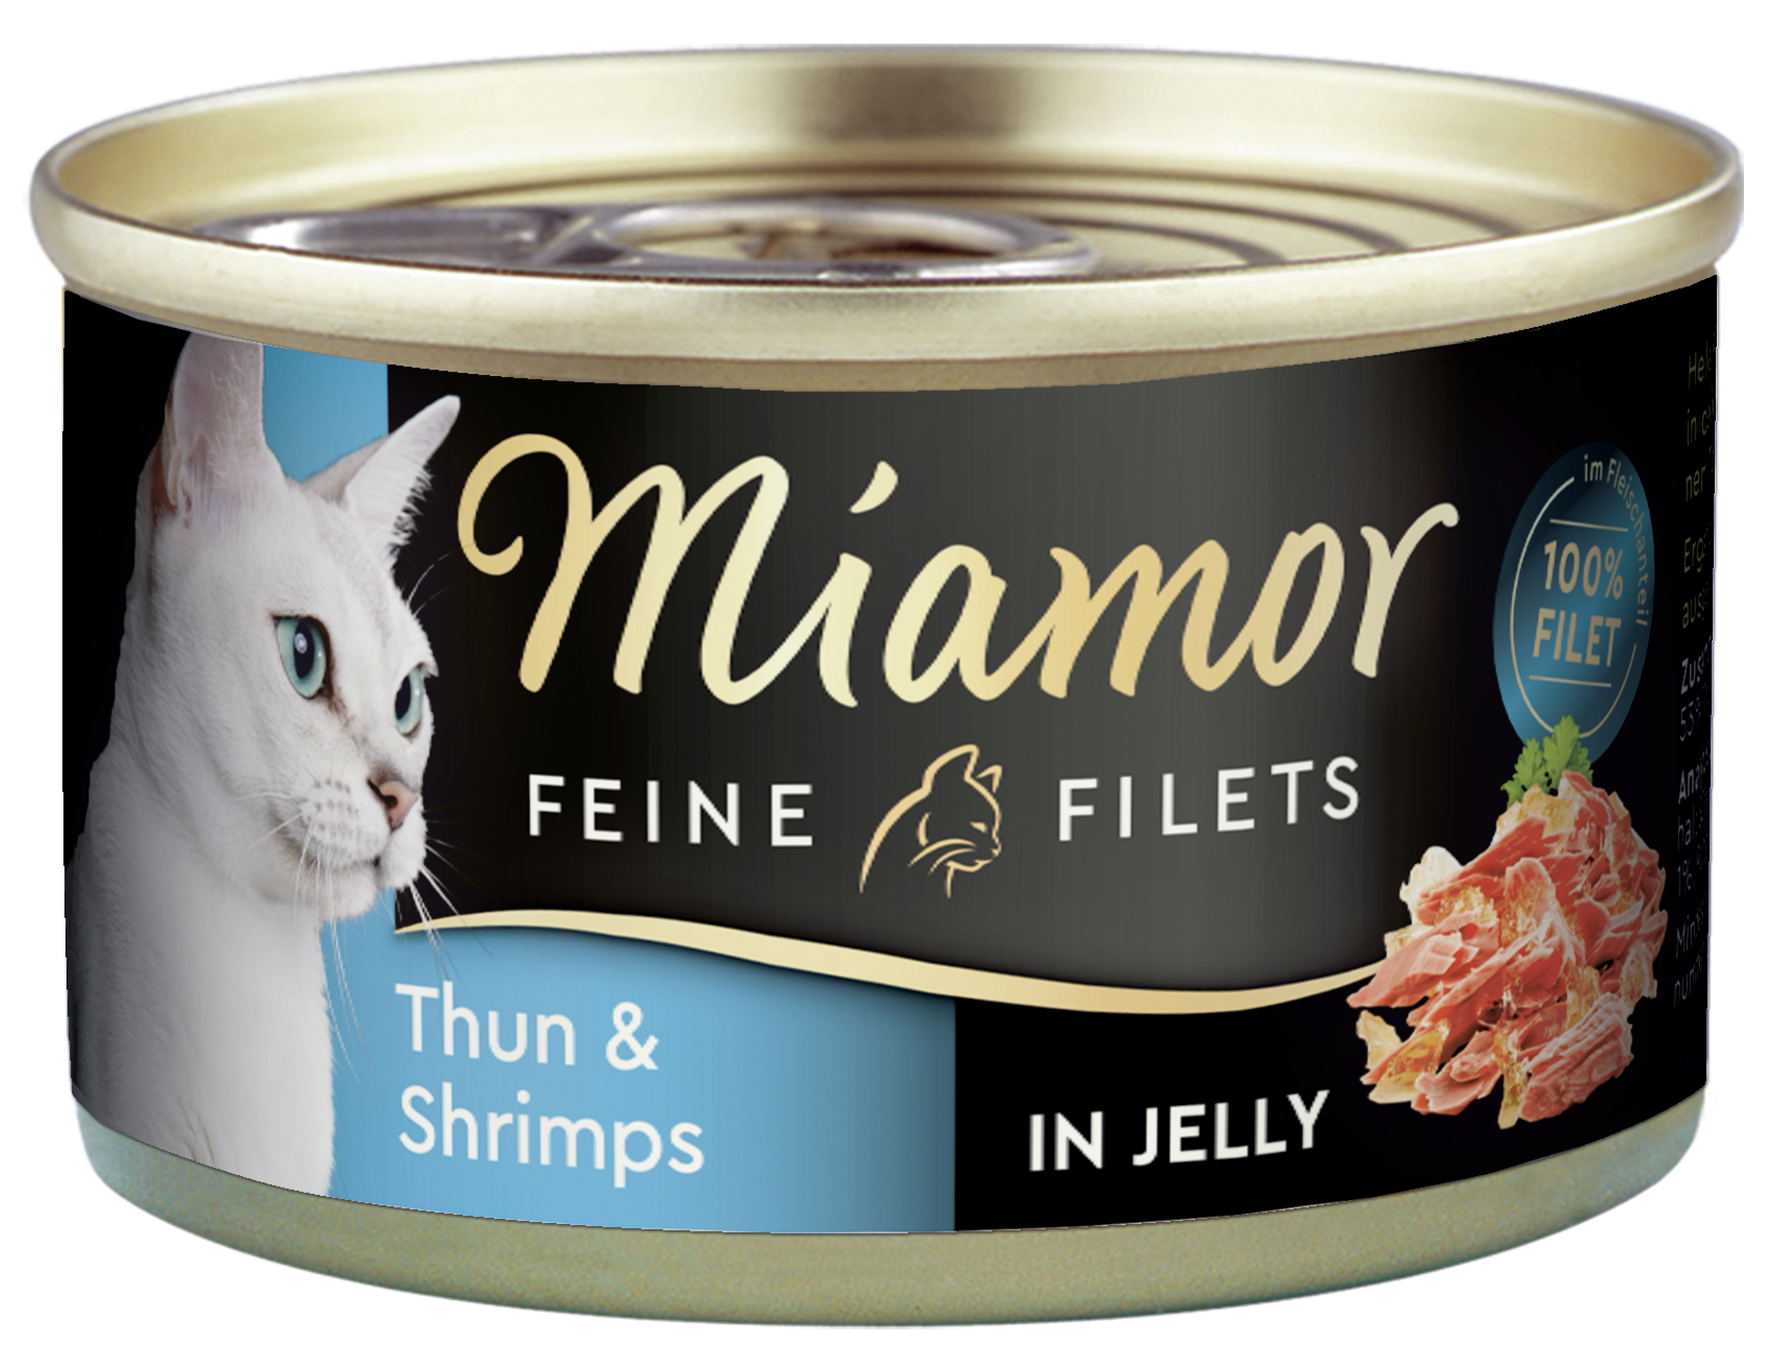 BTG BETEILIGUNGS GMBH Fin Miamor DS FF Thunfisch&Shrimps 100g Feine Filet